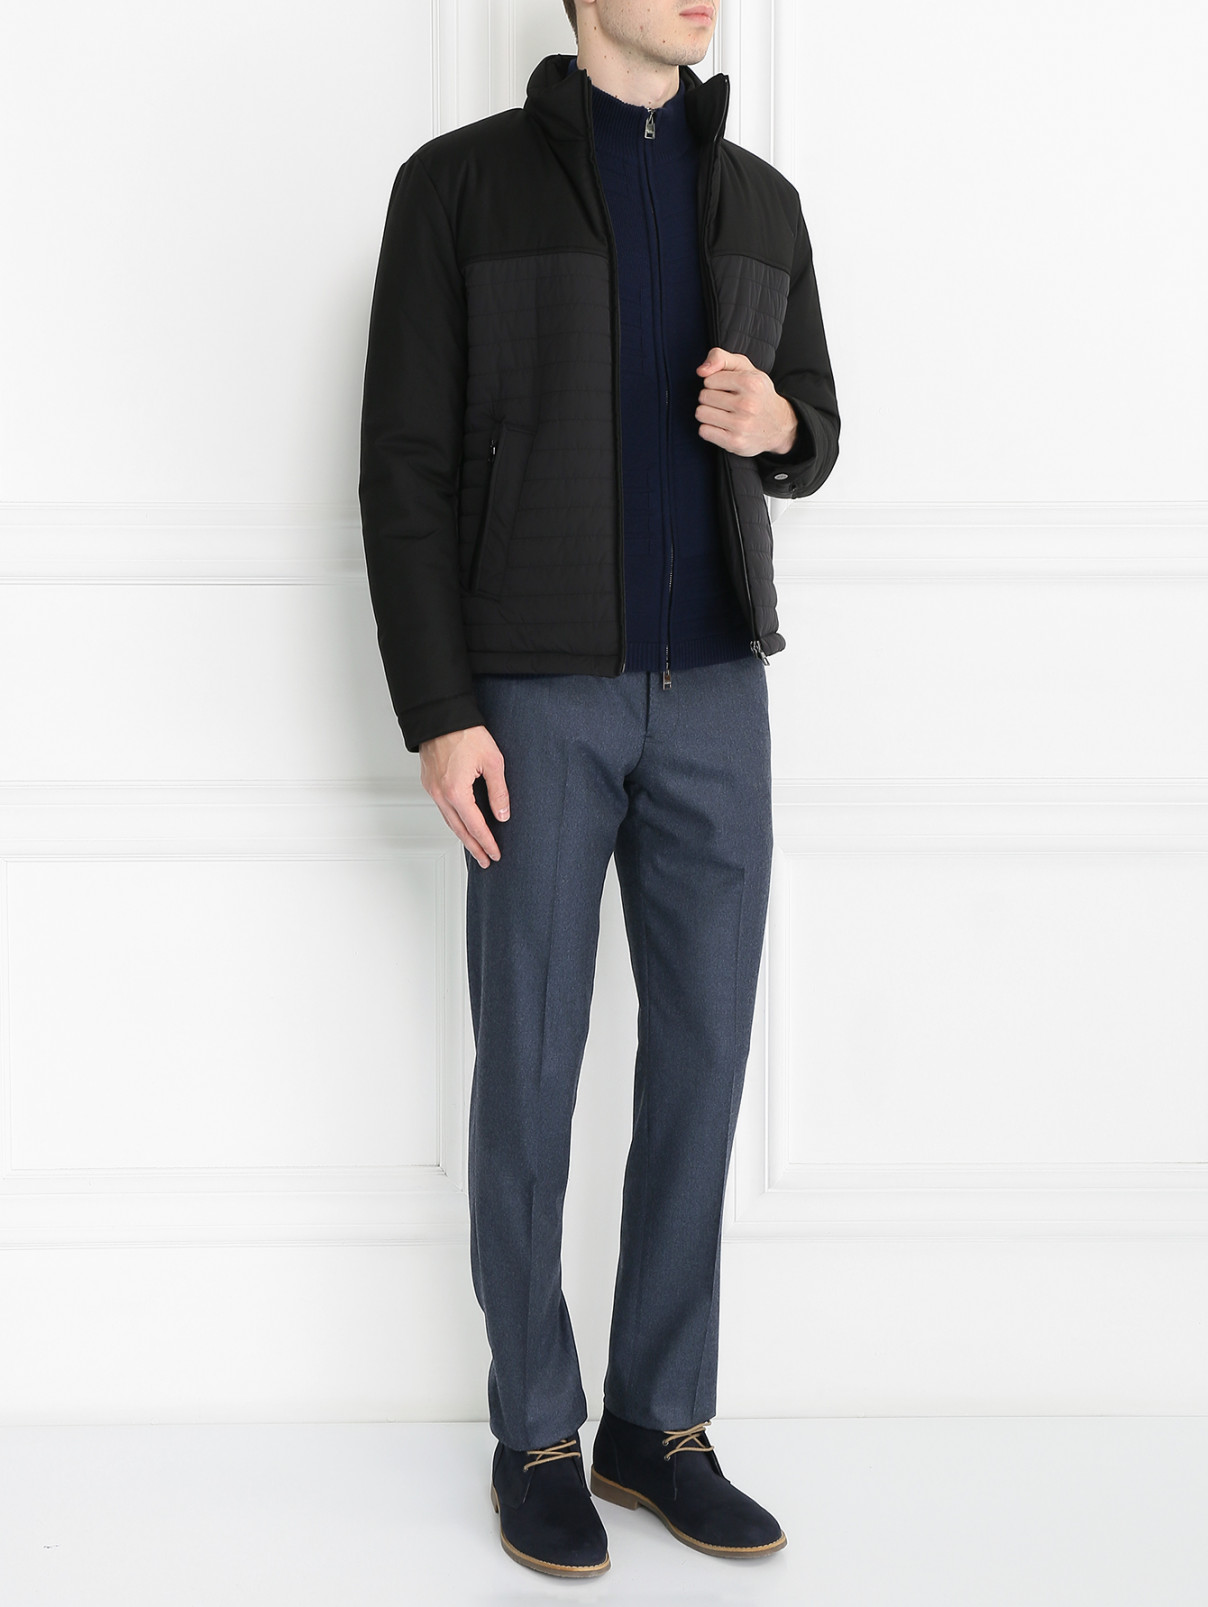 Куртка стеганая на молнии Pal Zileri  –  Модель Общий вид  – Цвет:  Черный